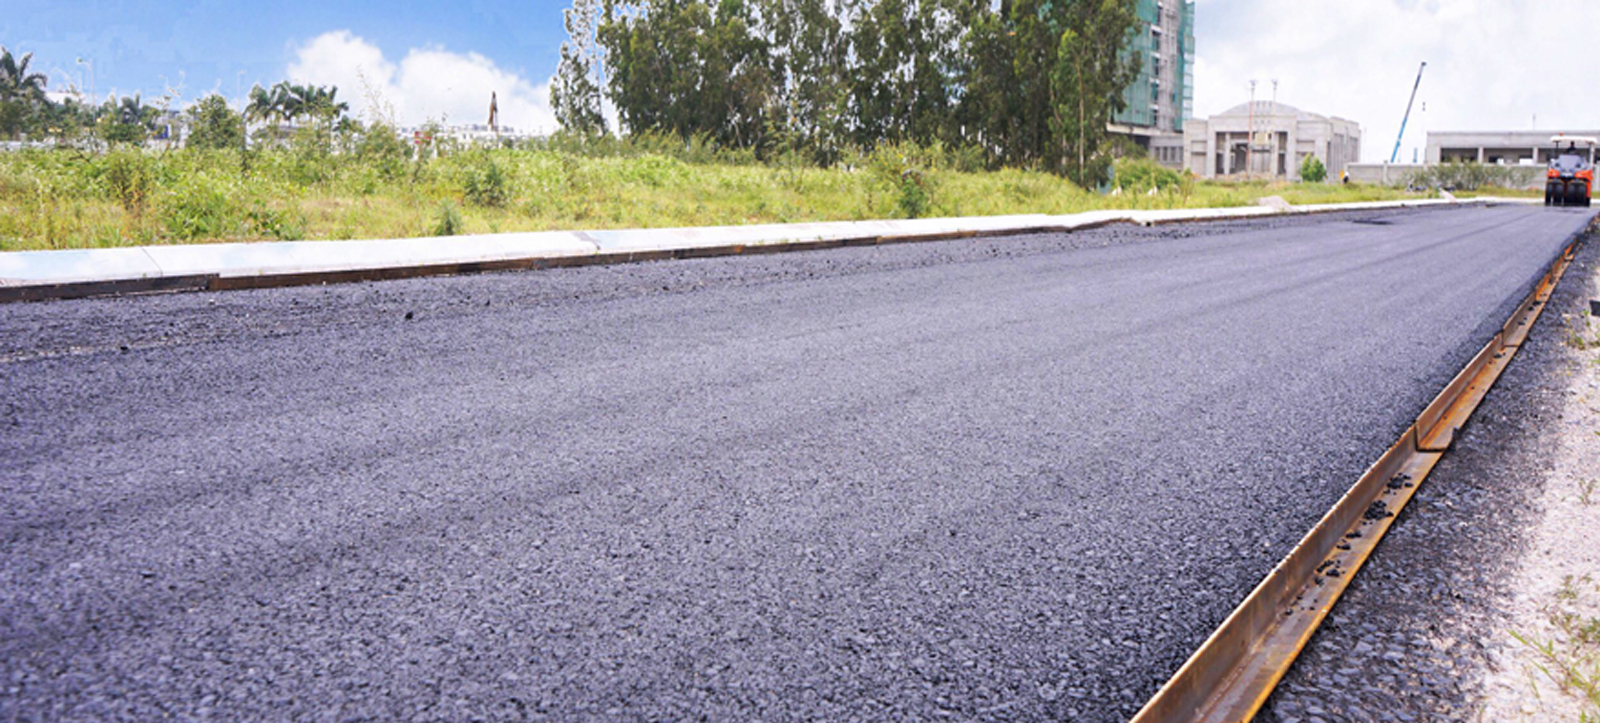 Một số ứng dụng phổ biến của bê tông asphalt